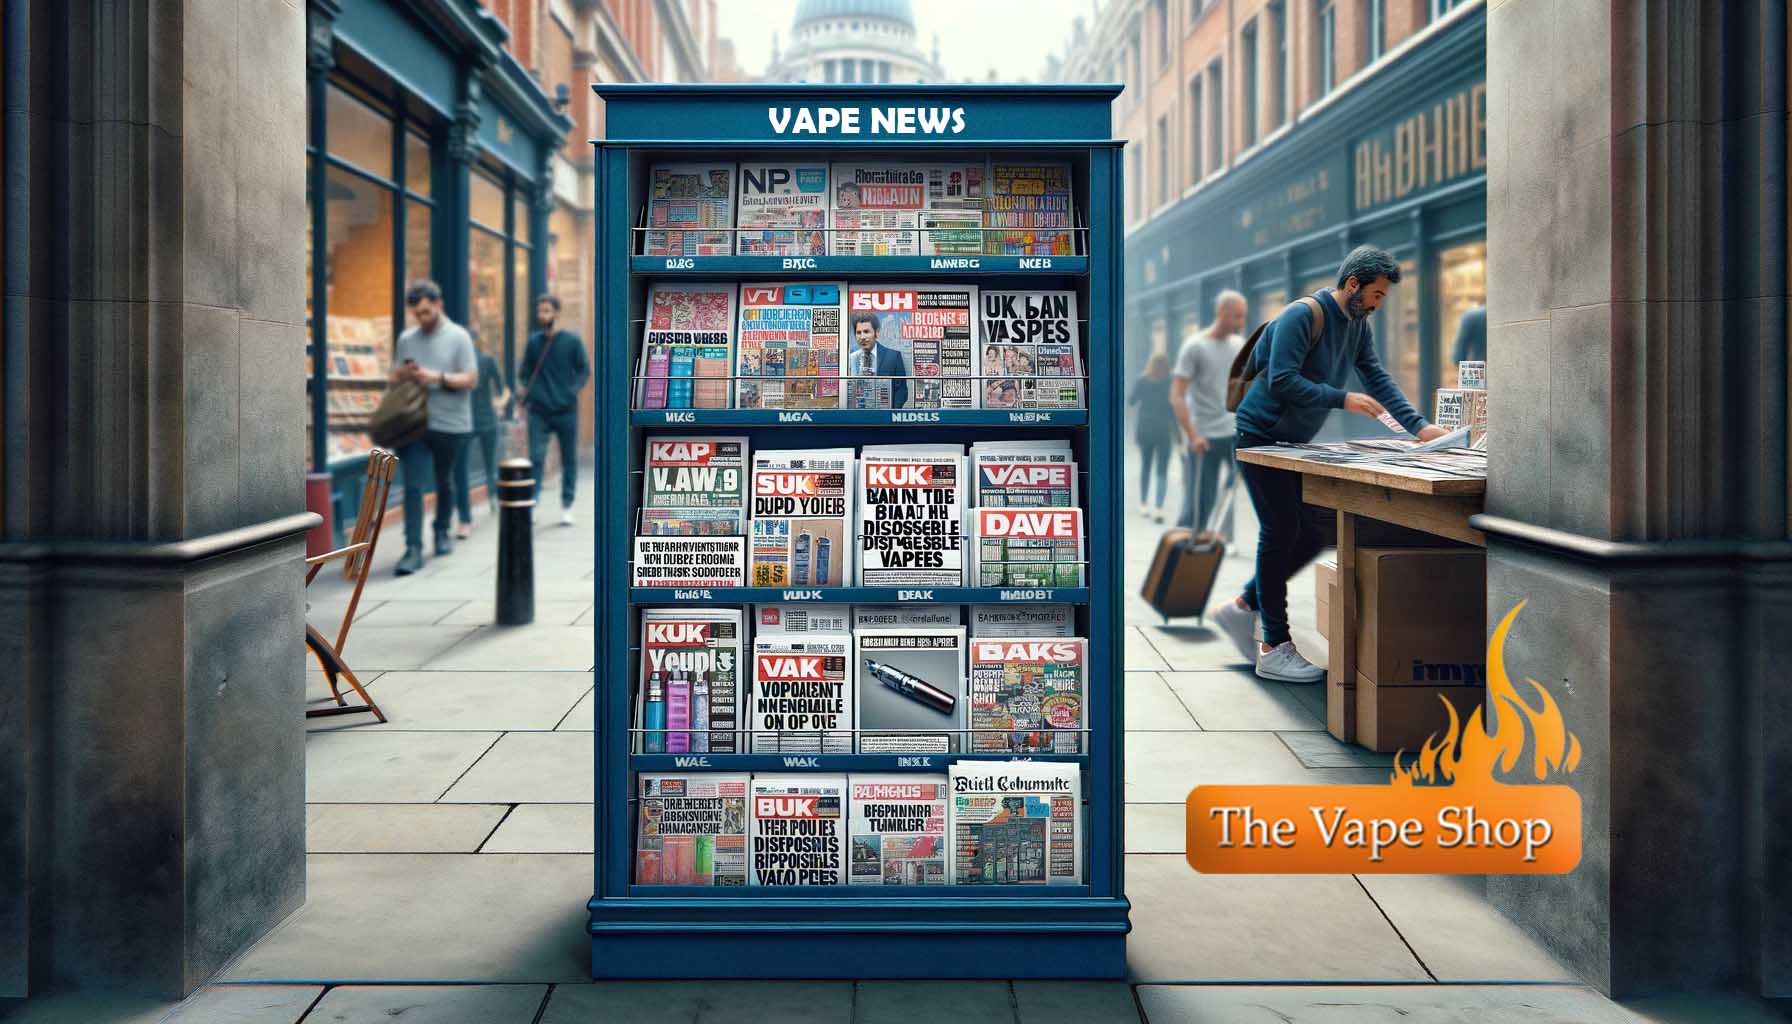 Latest Vape News by The Vape Shop